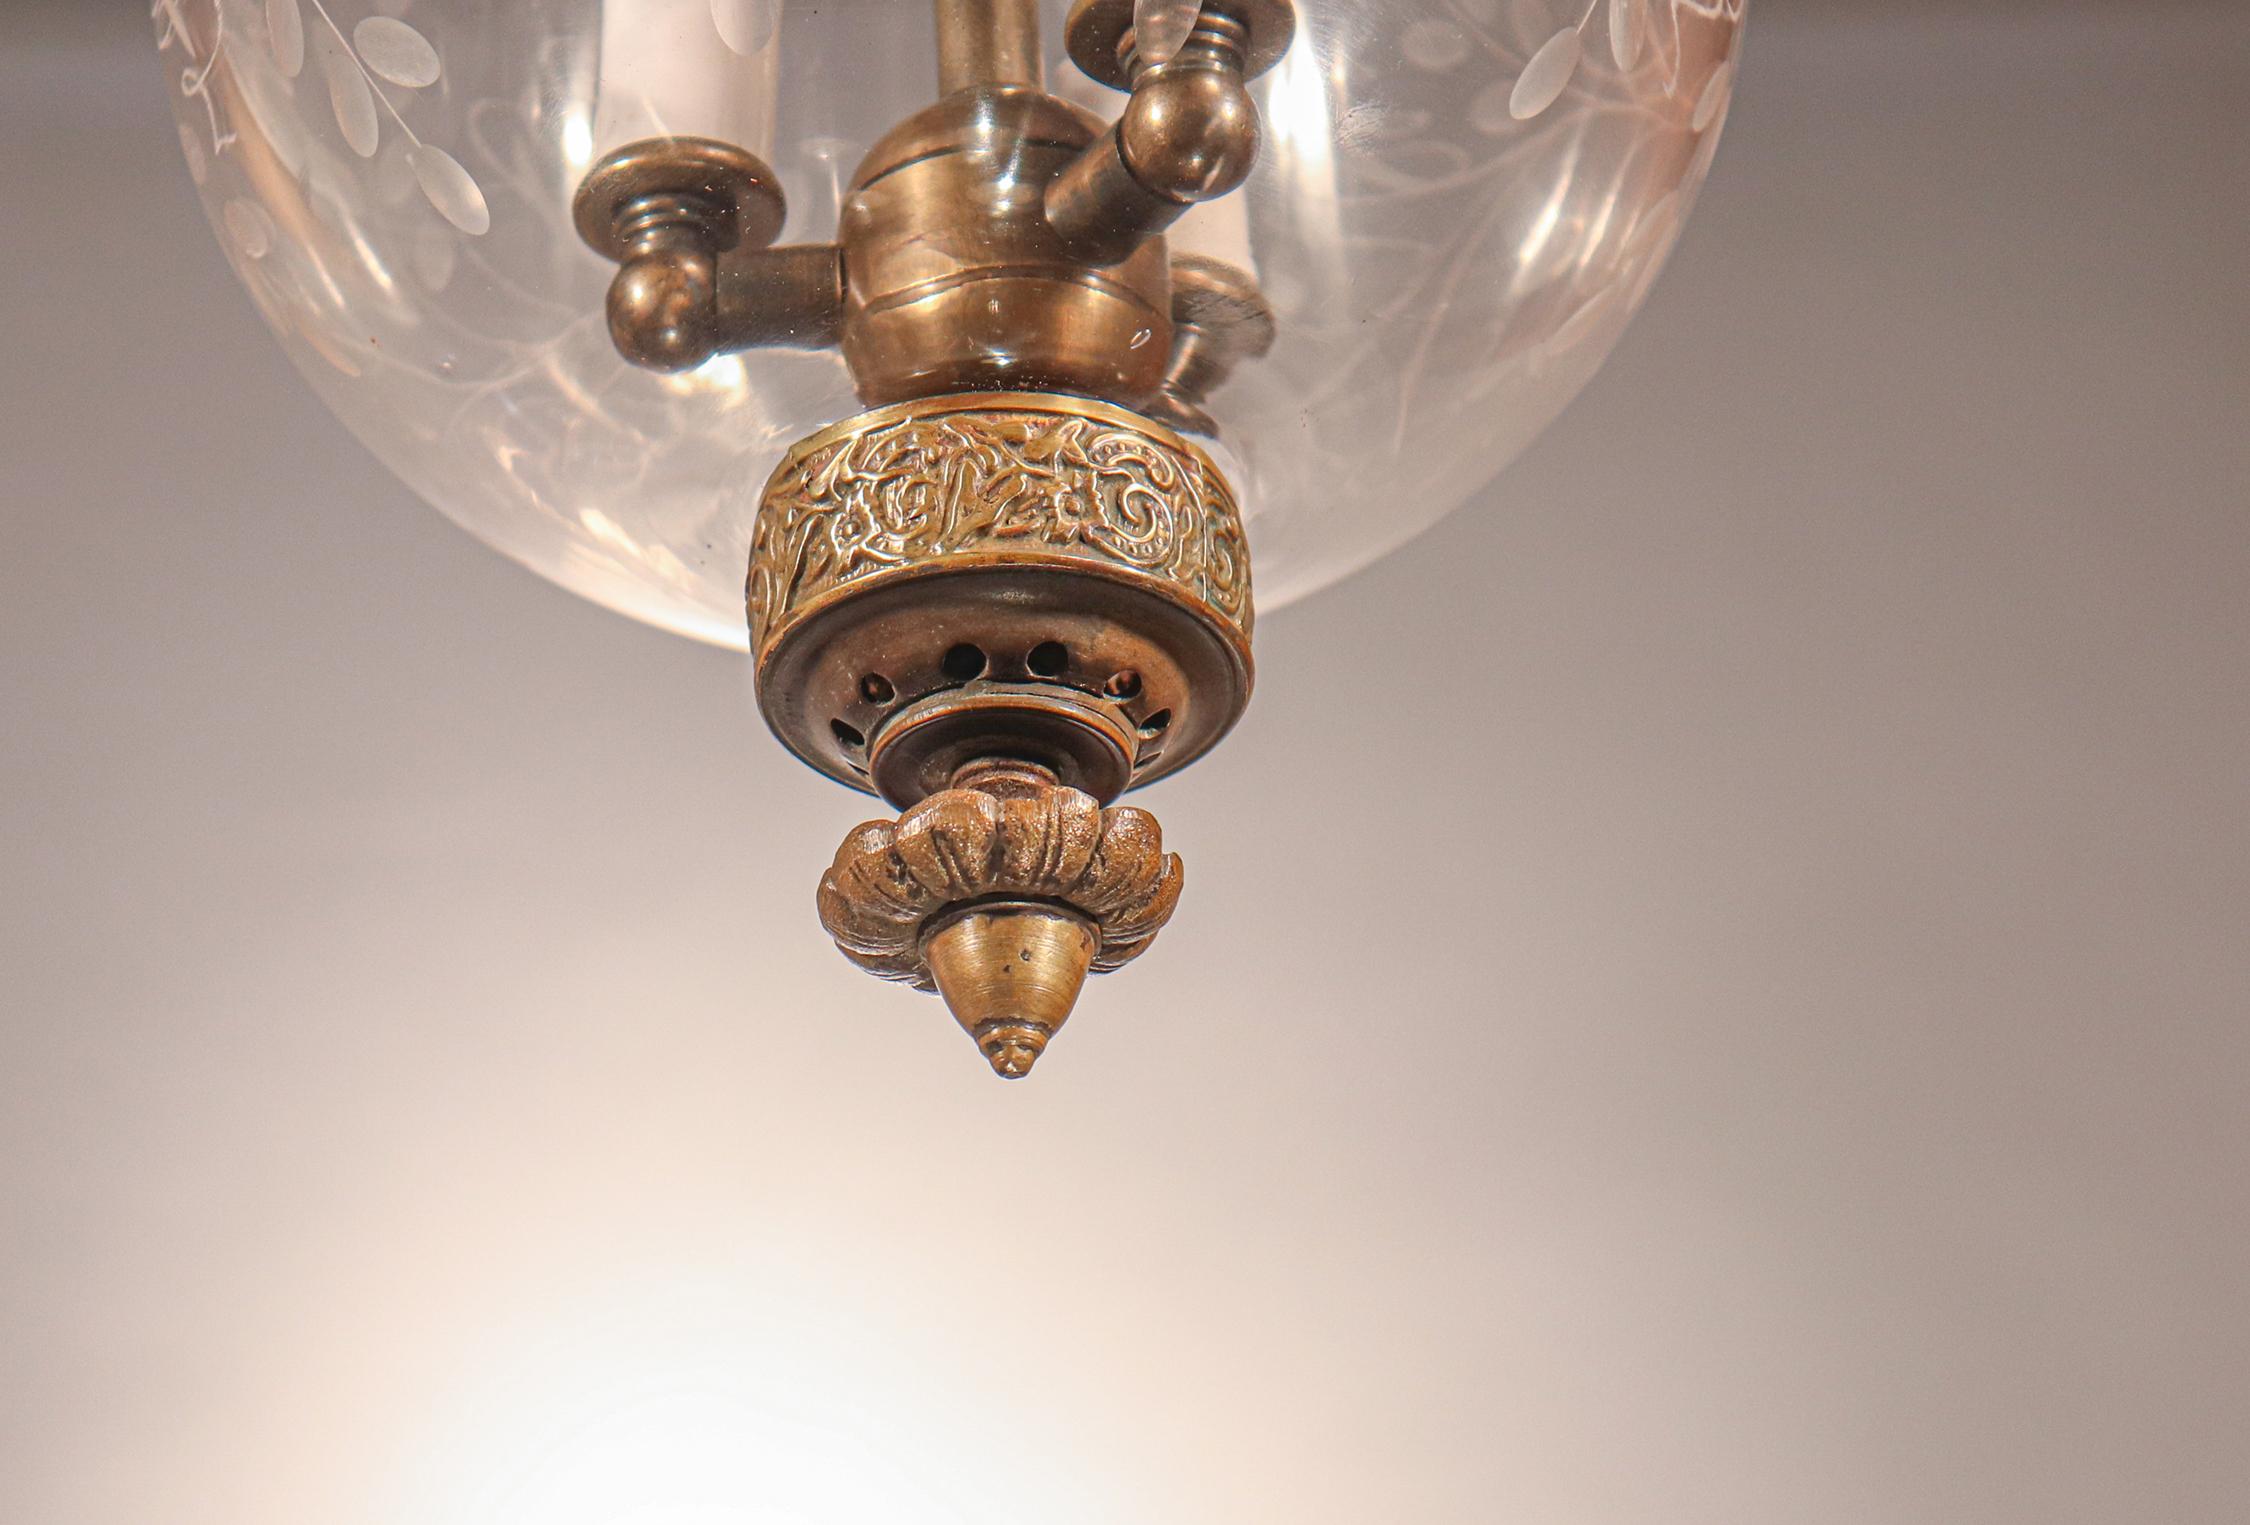 Brass Antique Globe Bell Jar Lantern with Vine Etching